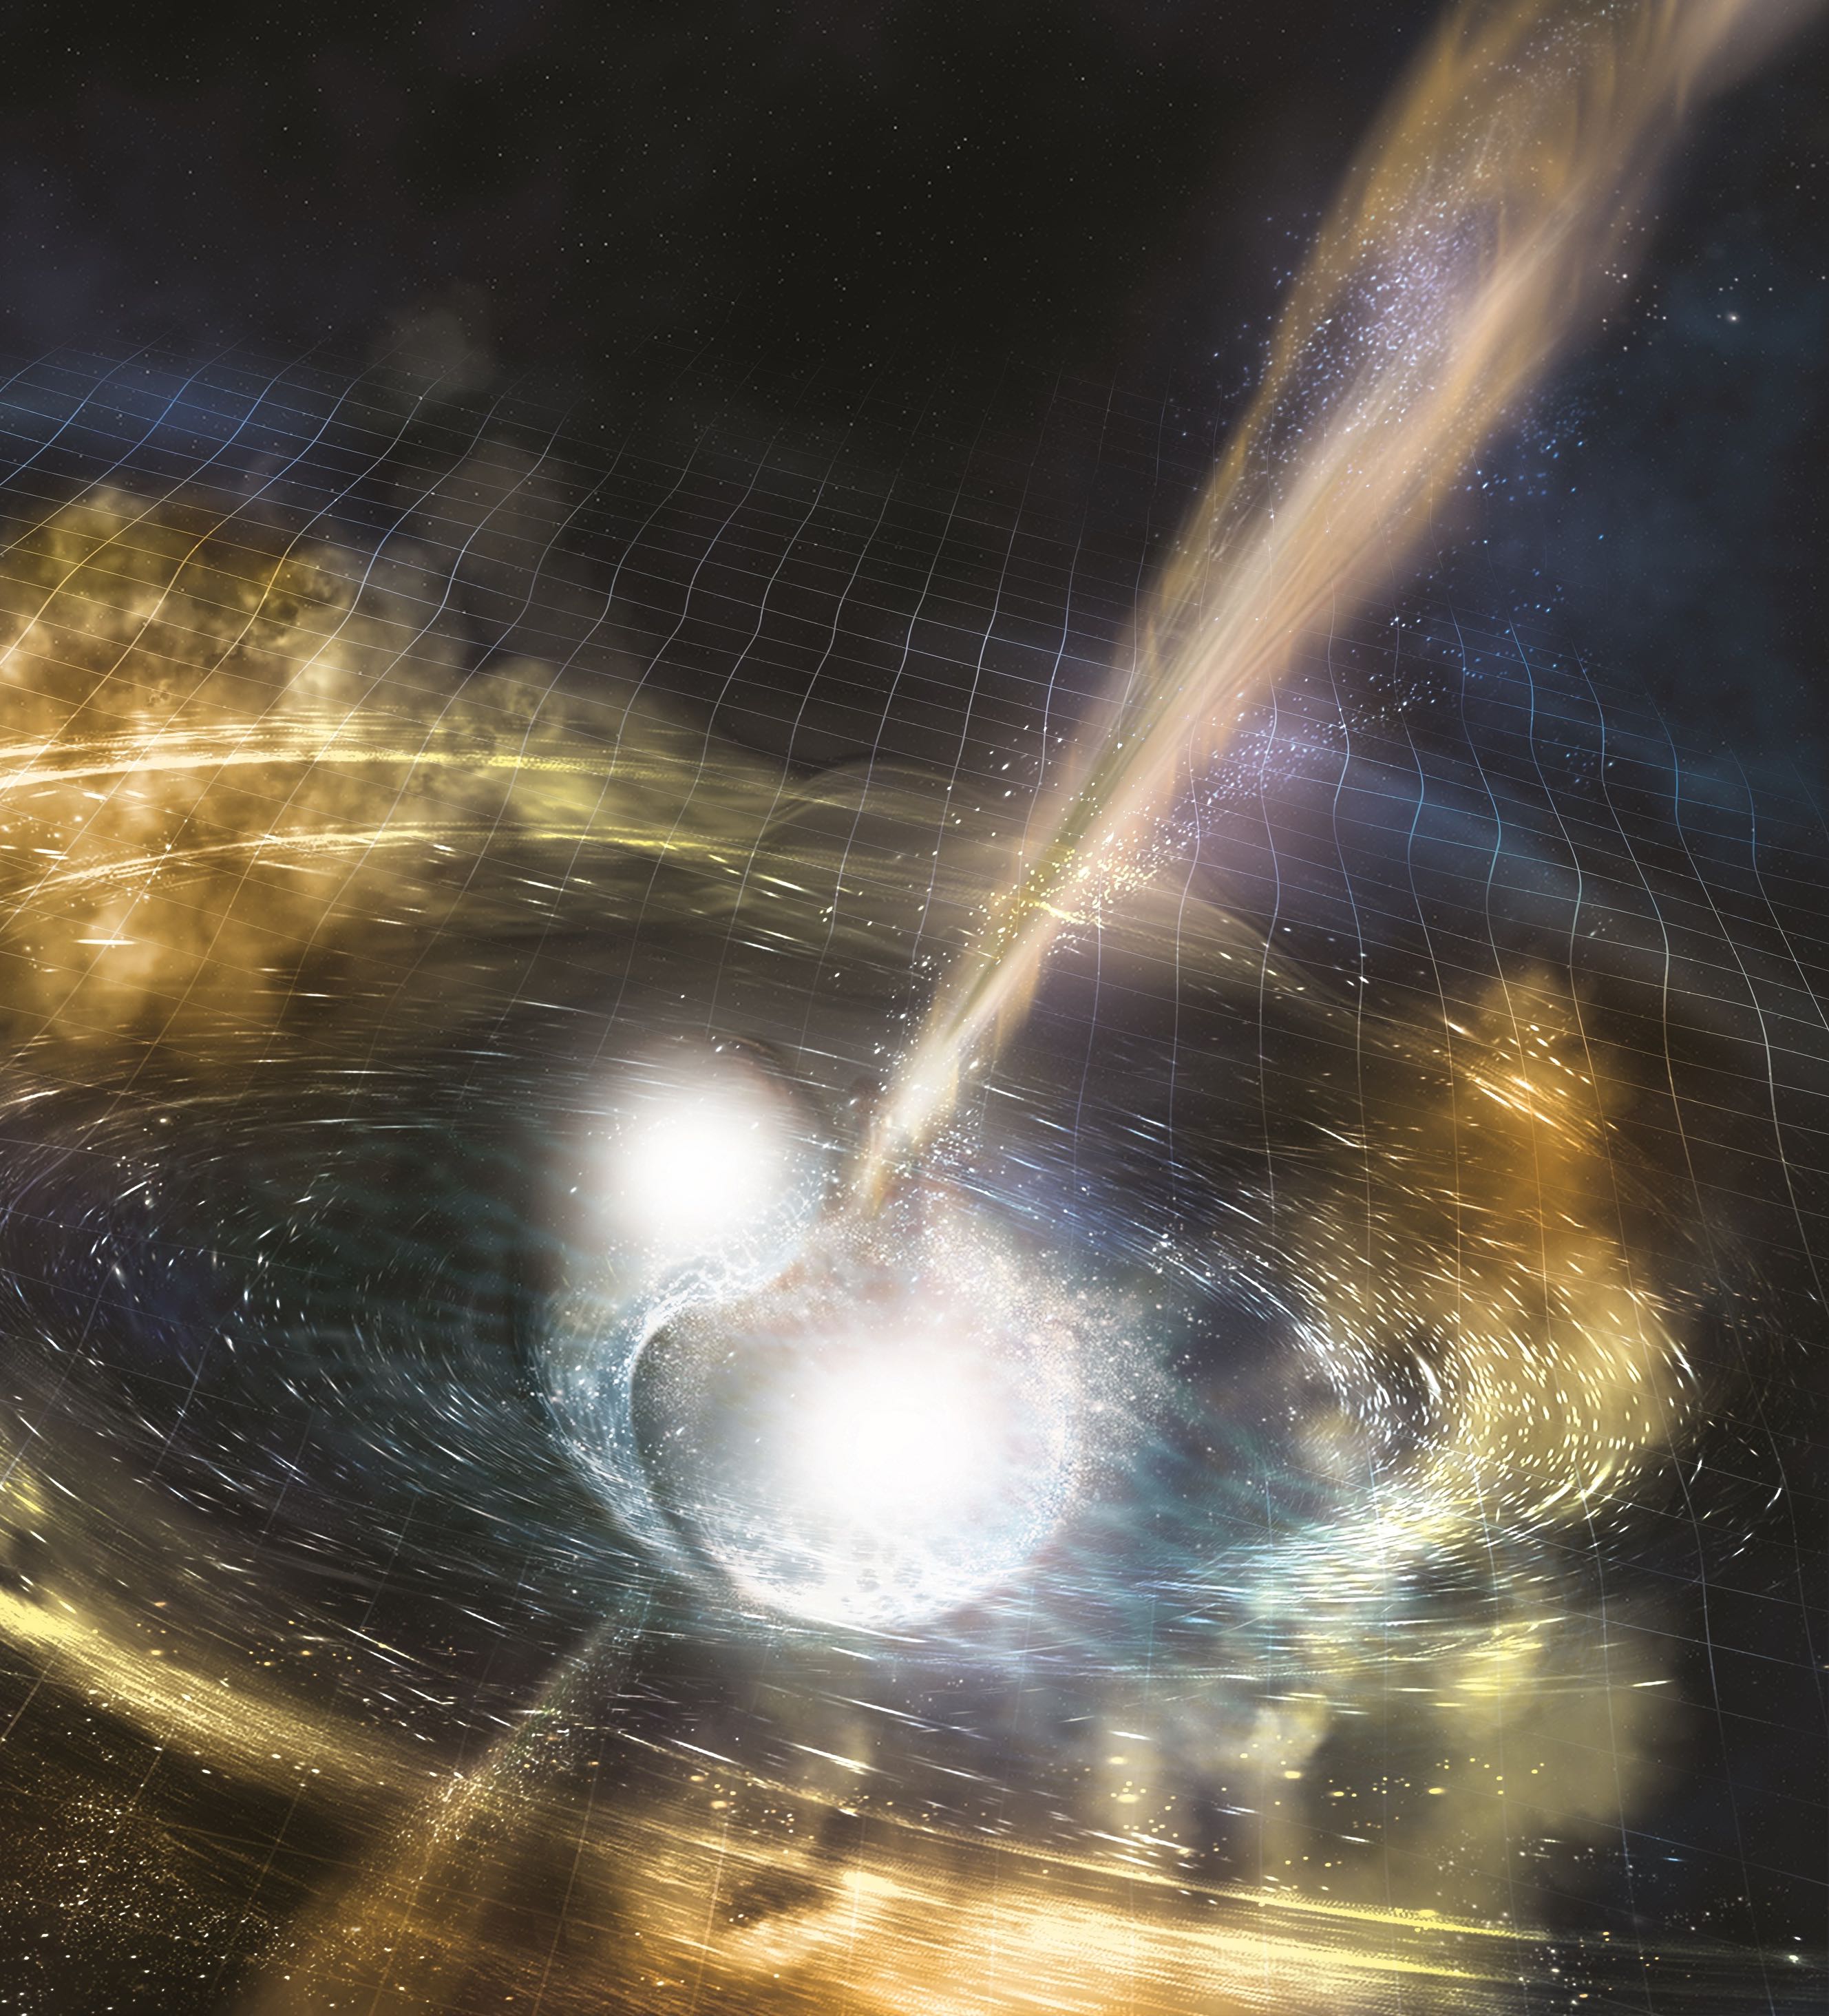 merging neutron stars